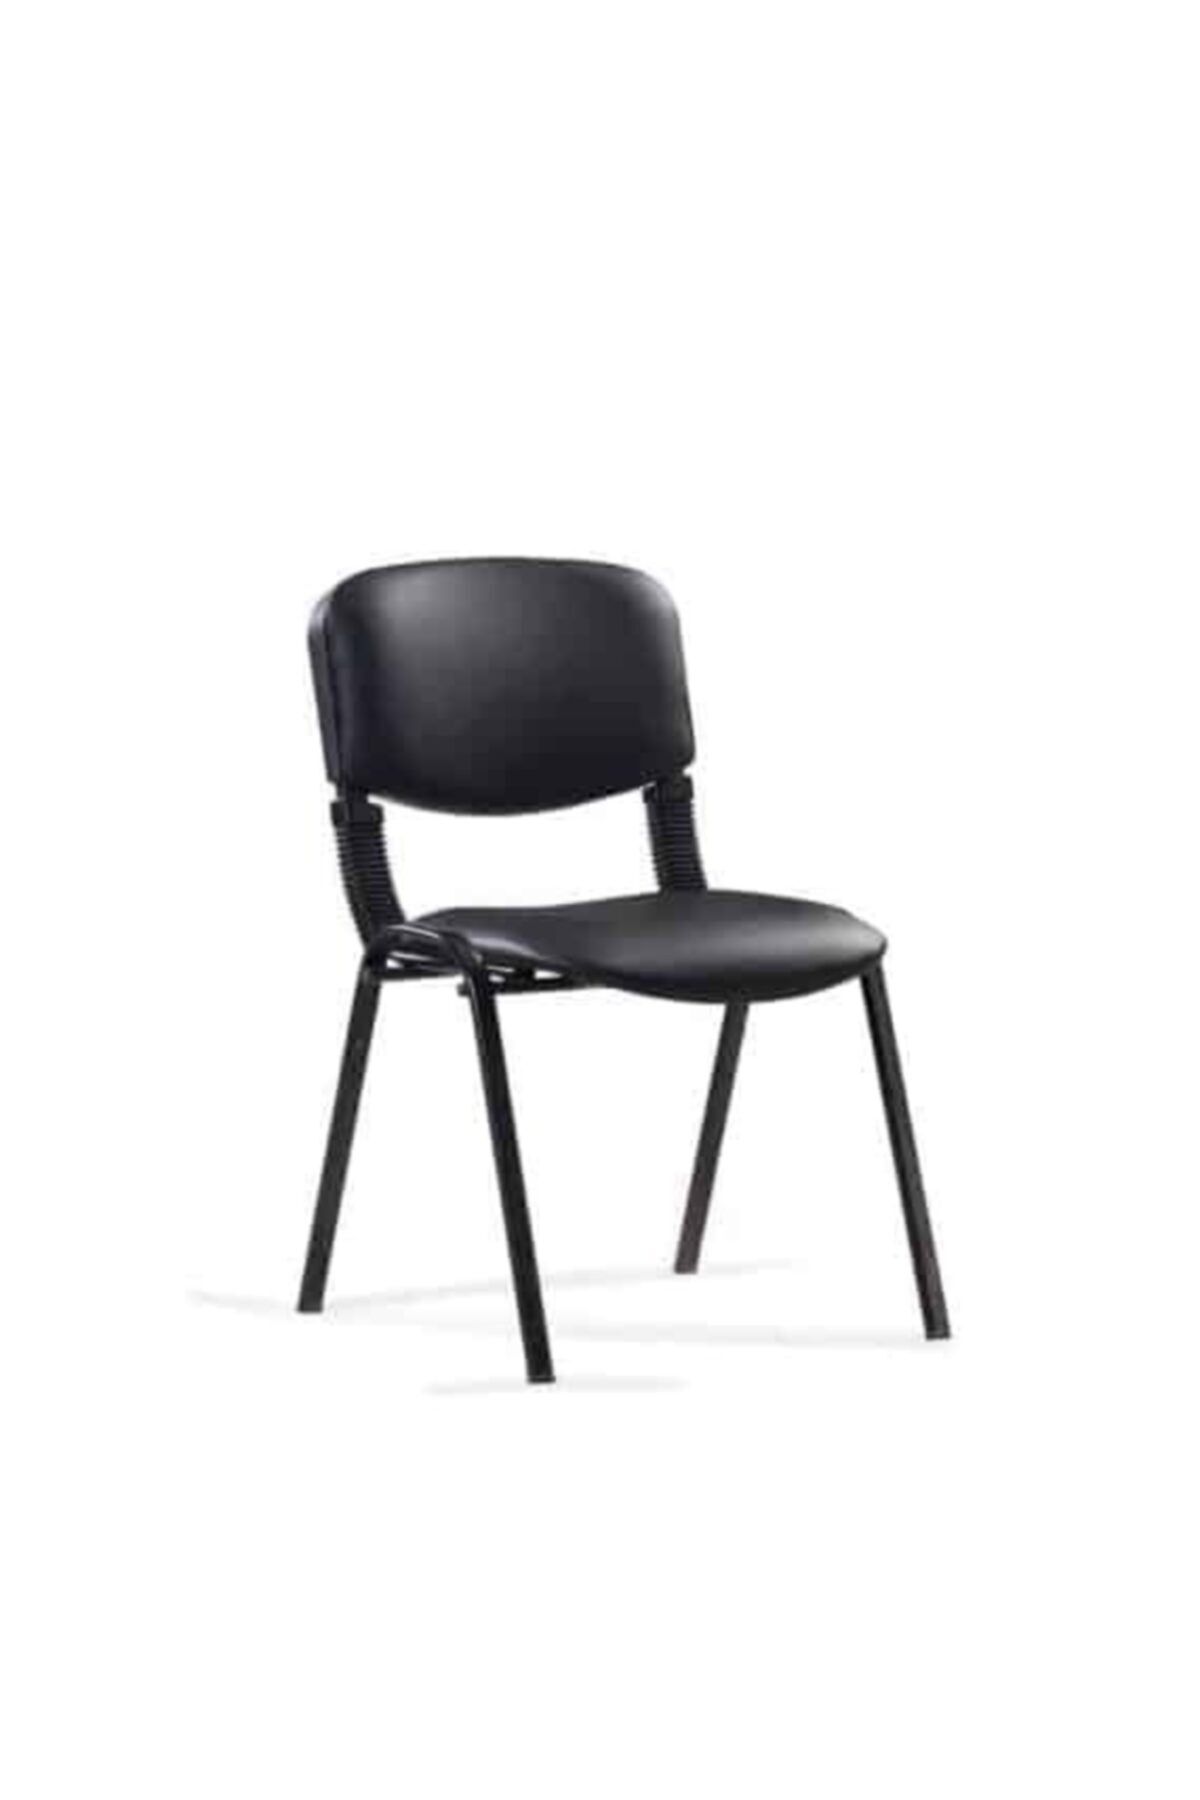 asel büro Form Sandalye Siyah